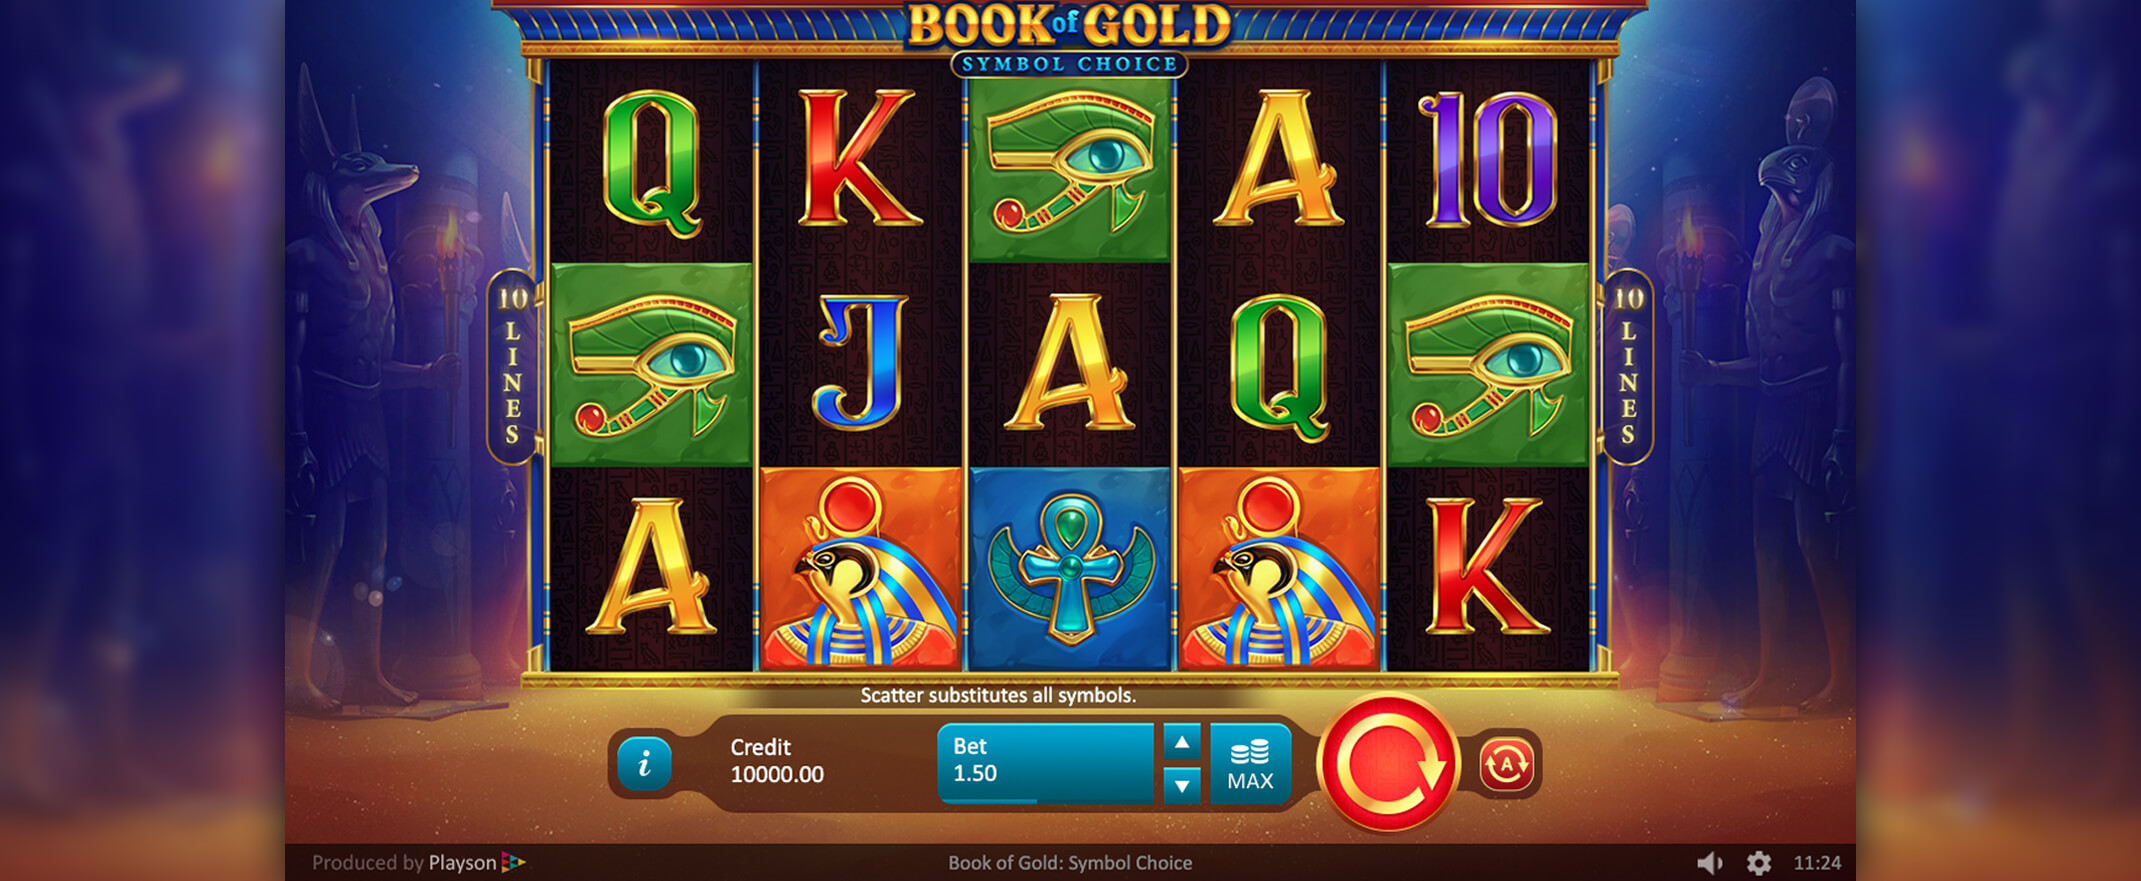 Book of Gold: Symbol Choice Spielautomat spielen